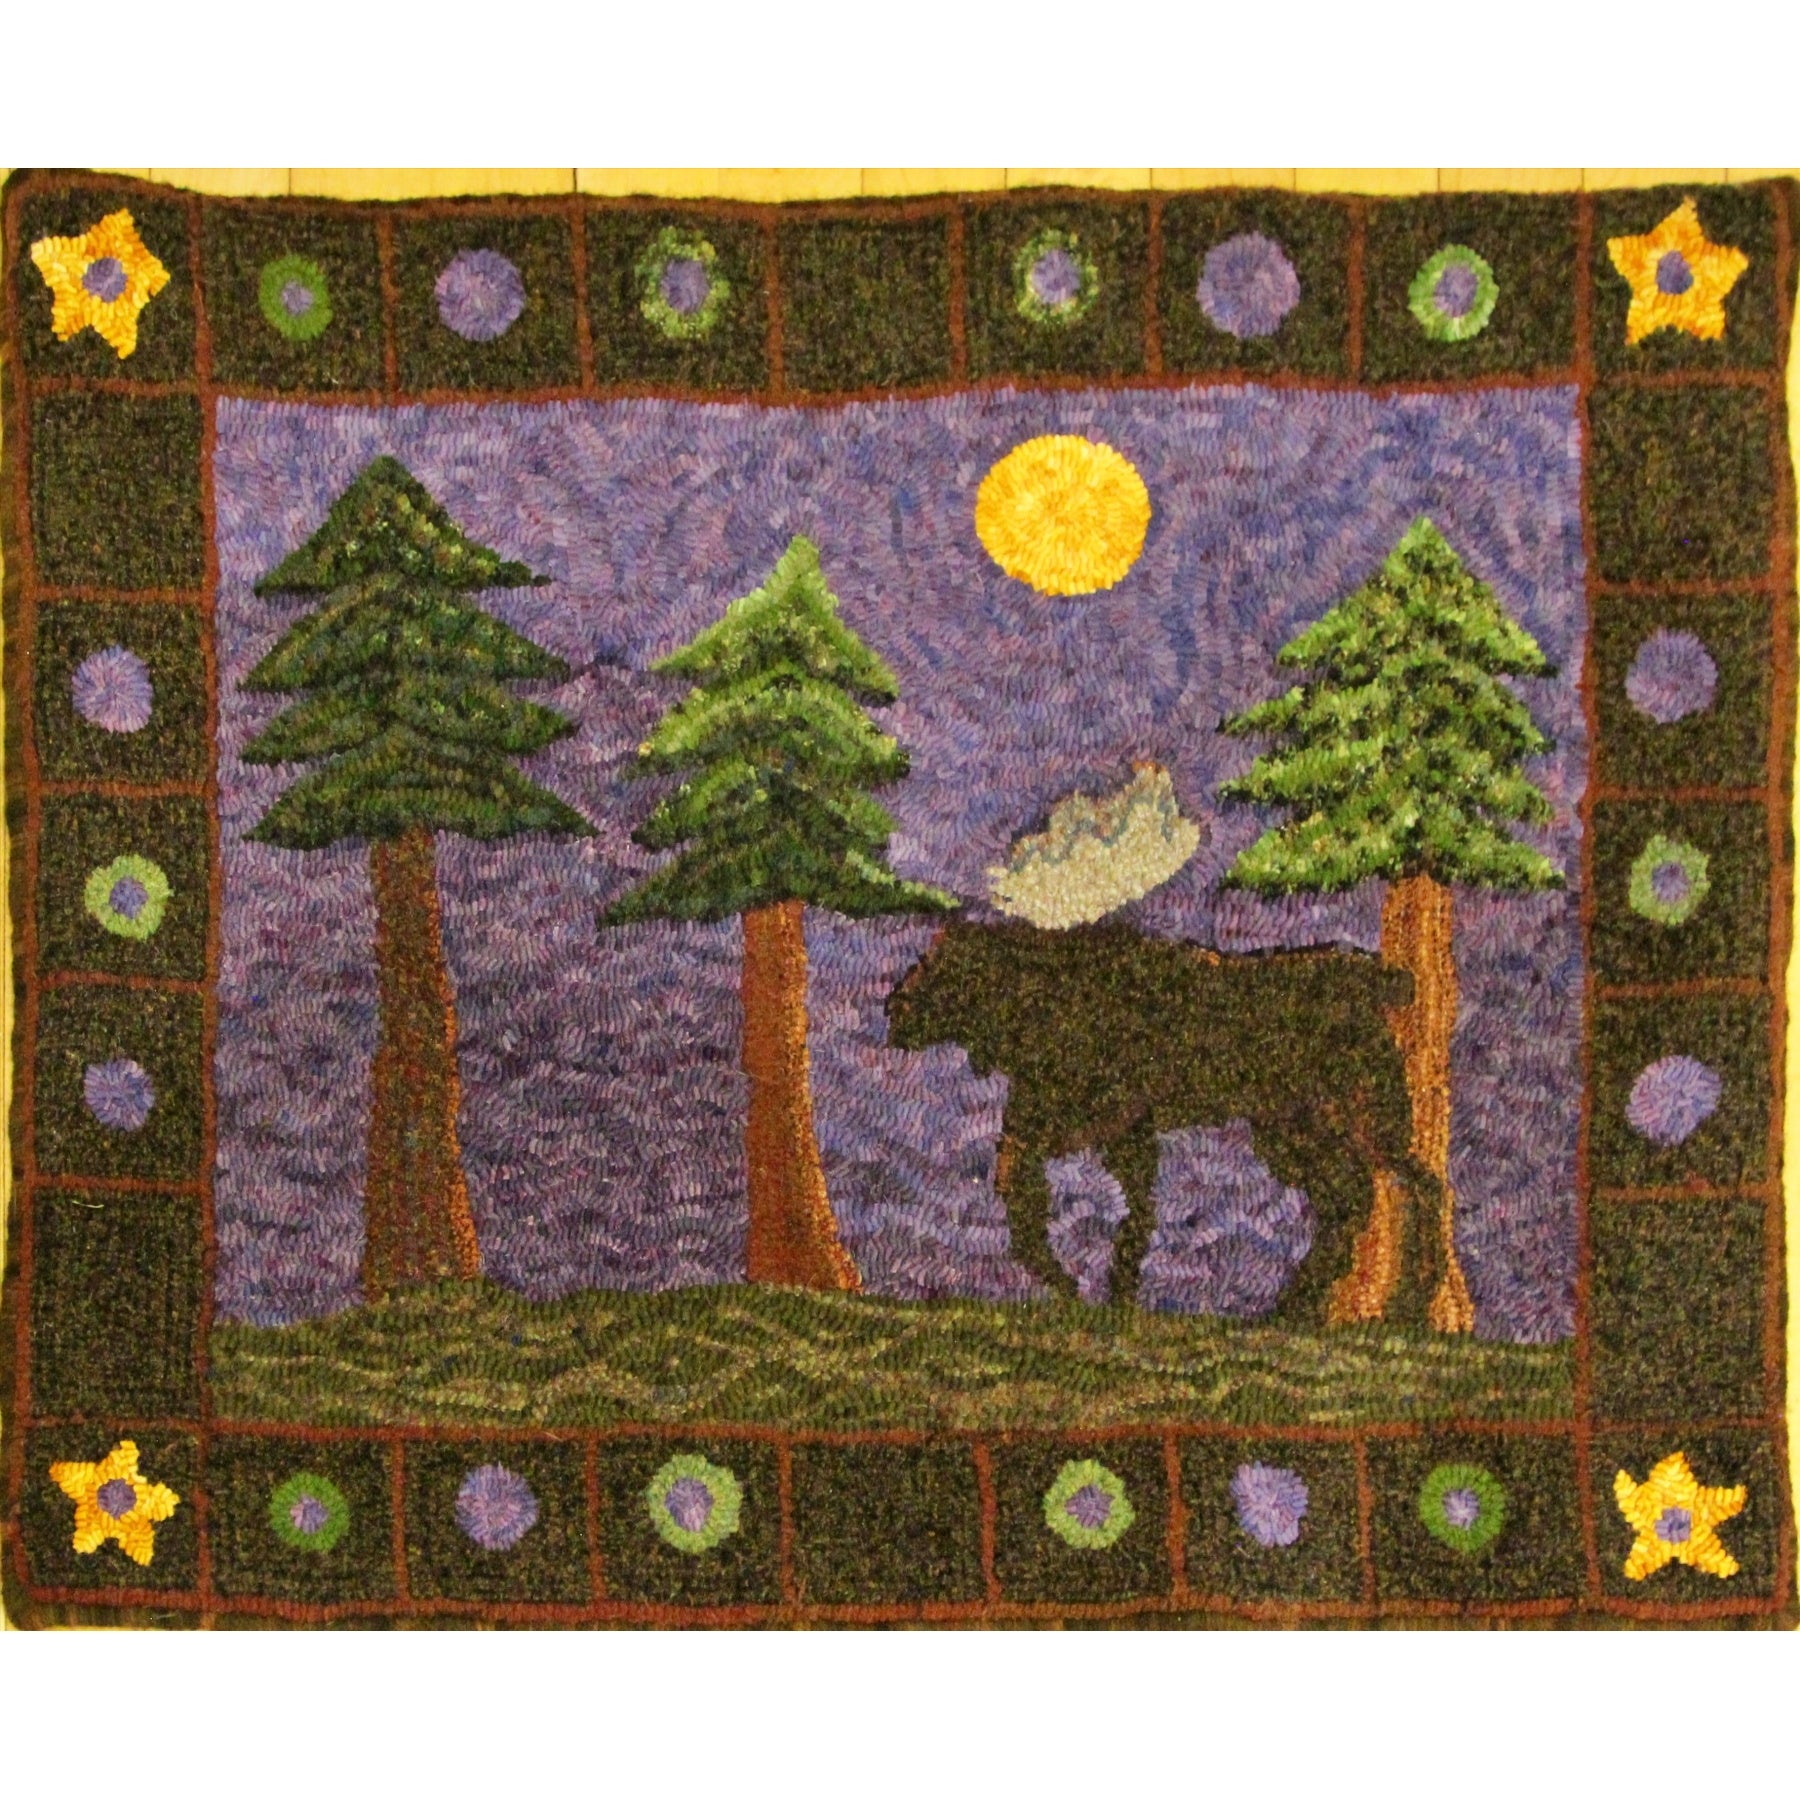 Moose, rug hooked by Sandy Ferguson